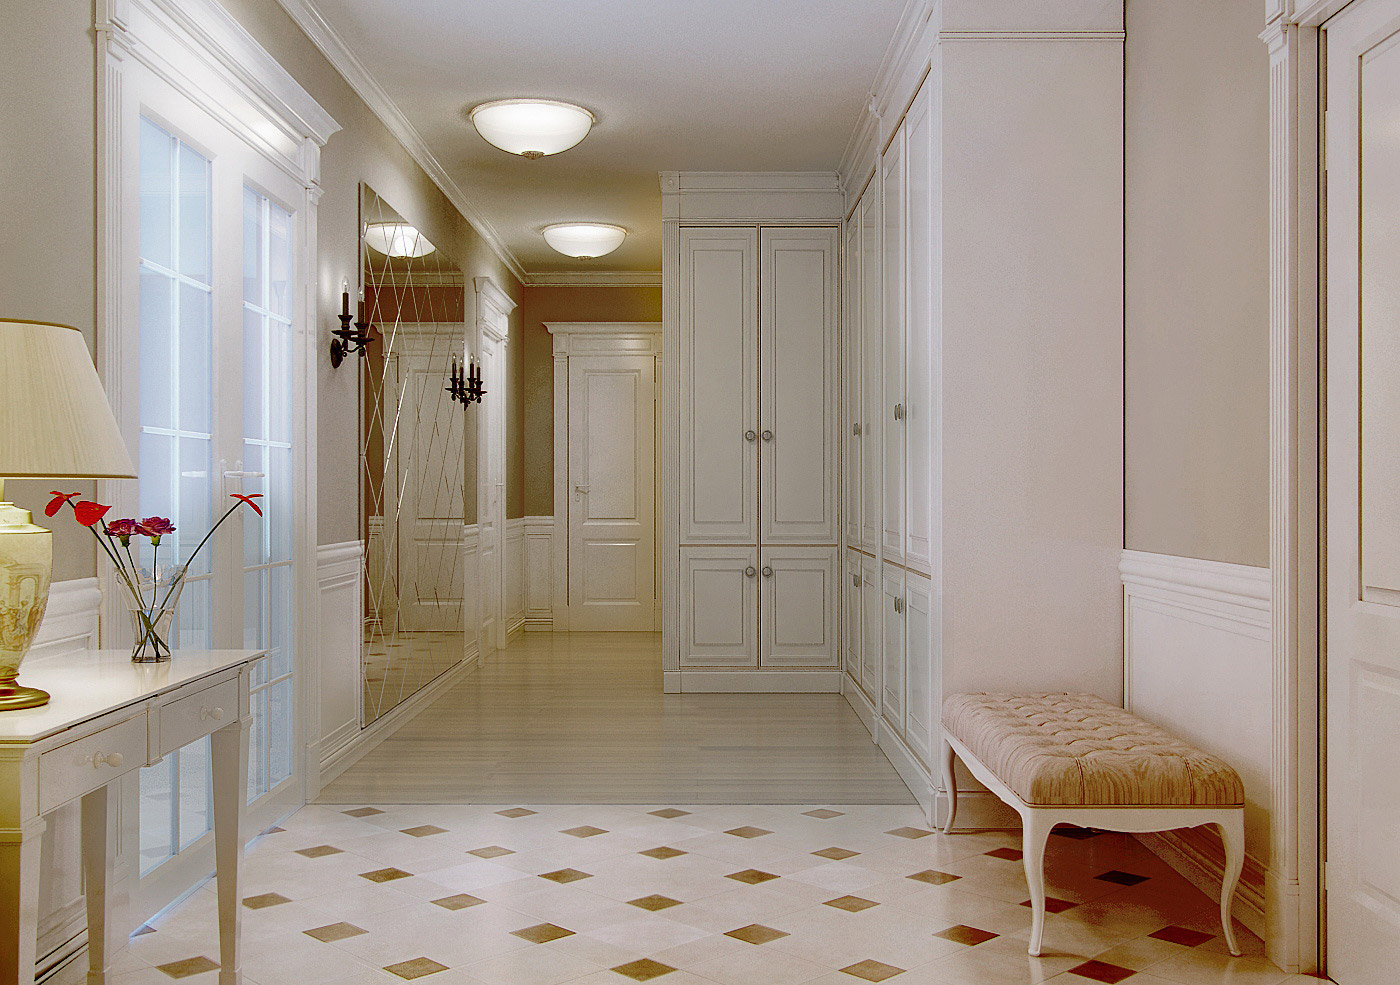 Плитка на пол в коридор: советы по выбору дизайна прихожей и технические характеристики.